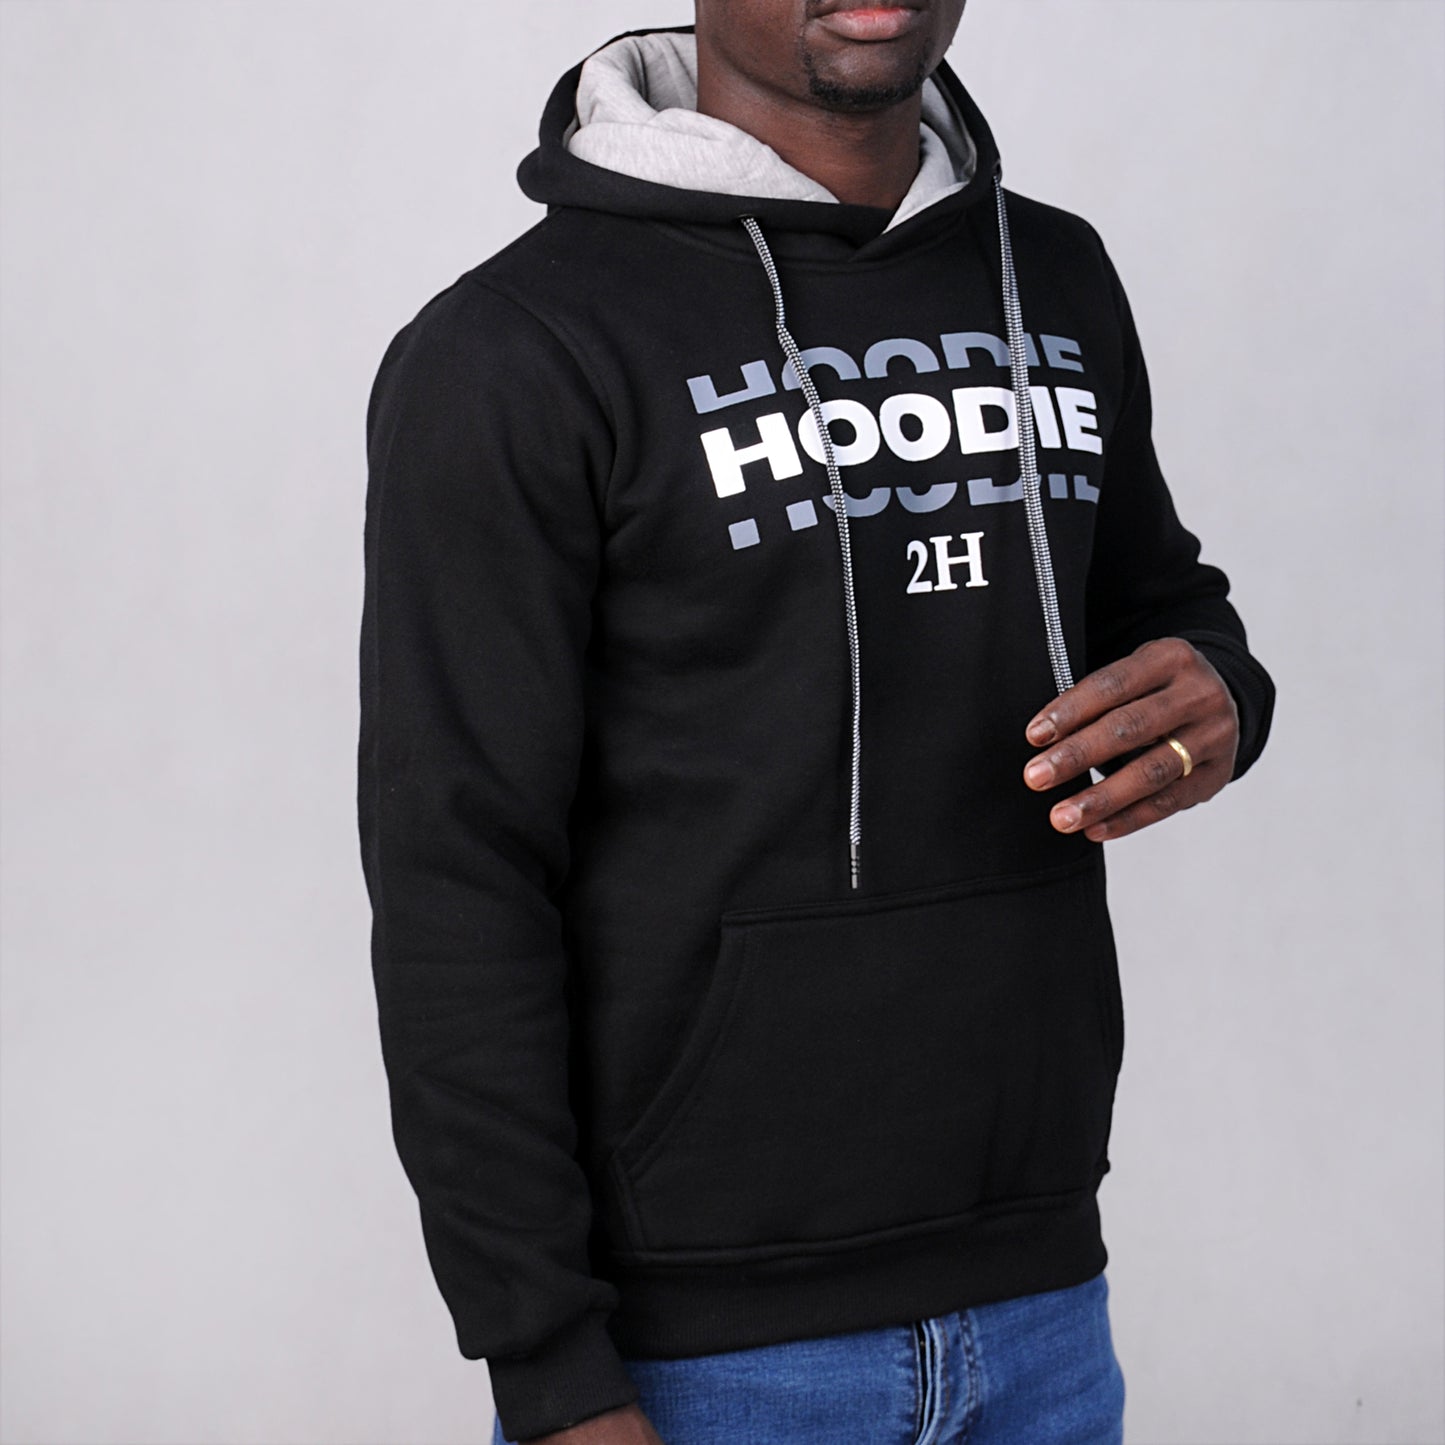 SALE! 2H Black Men Sweater Printed Warm Hoodie